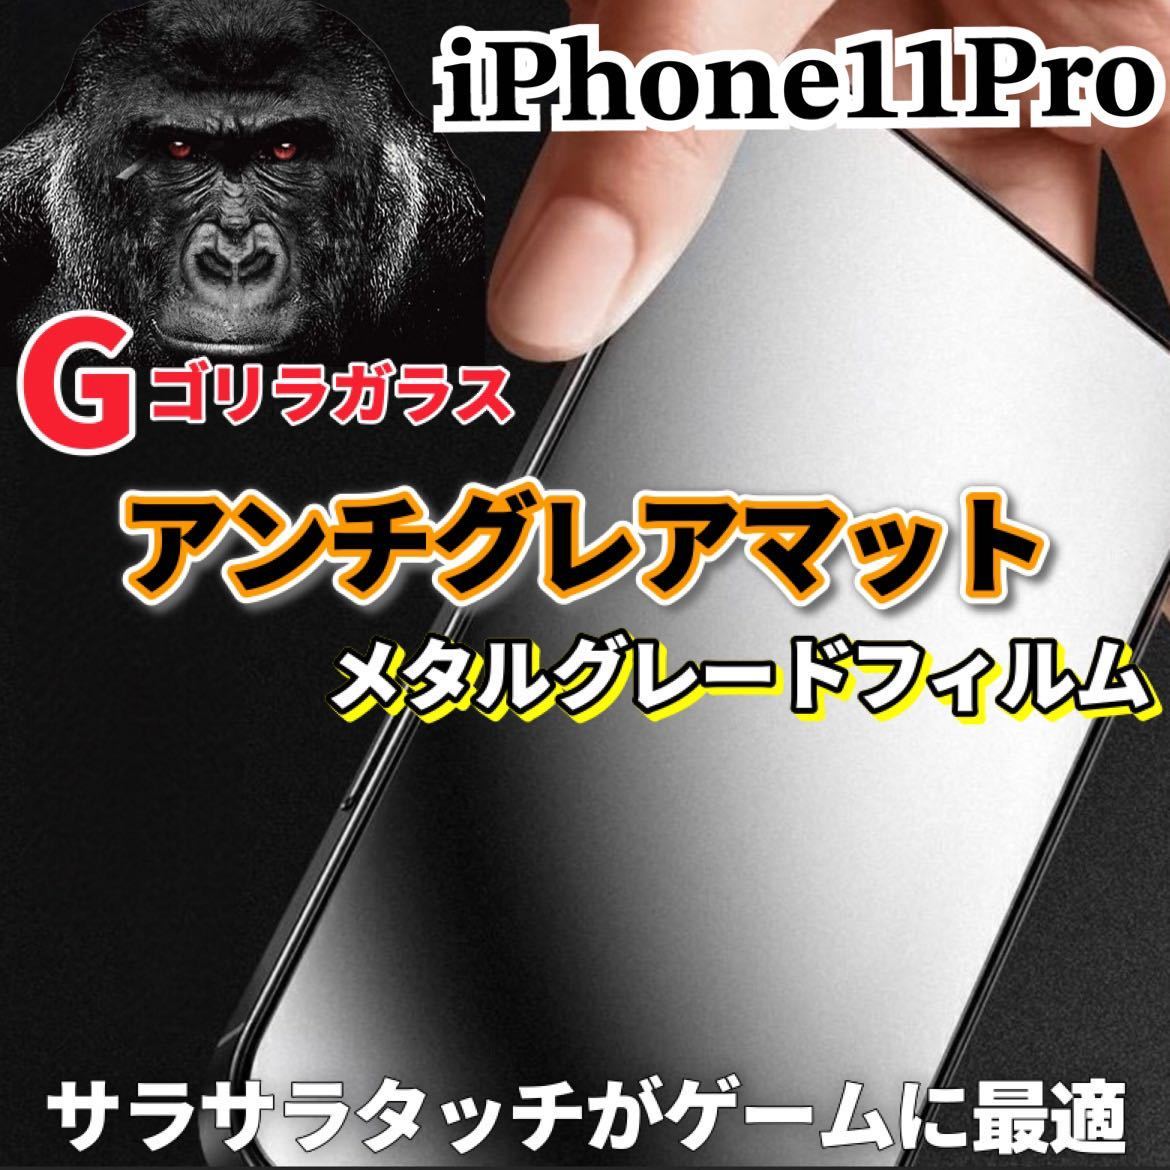 〈高性能〉【iPhone11Pro】極上マット2.5Dアンチグレアガラスフィルム